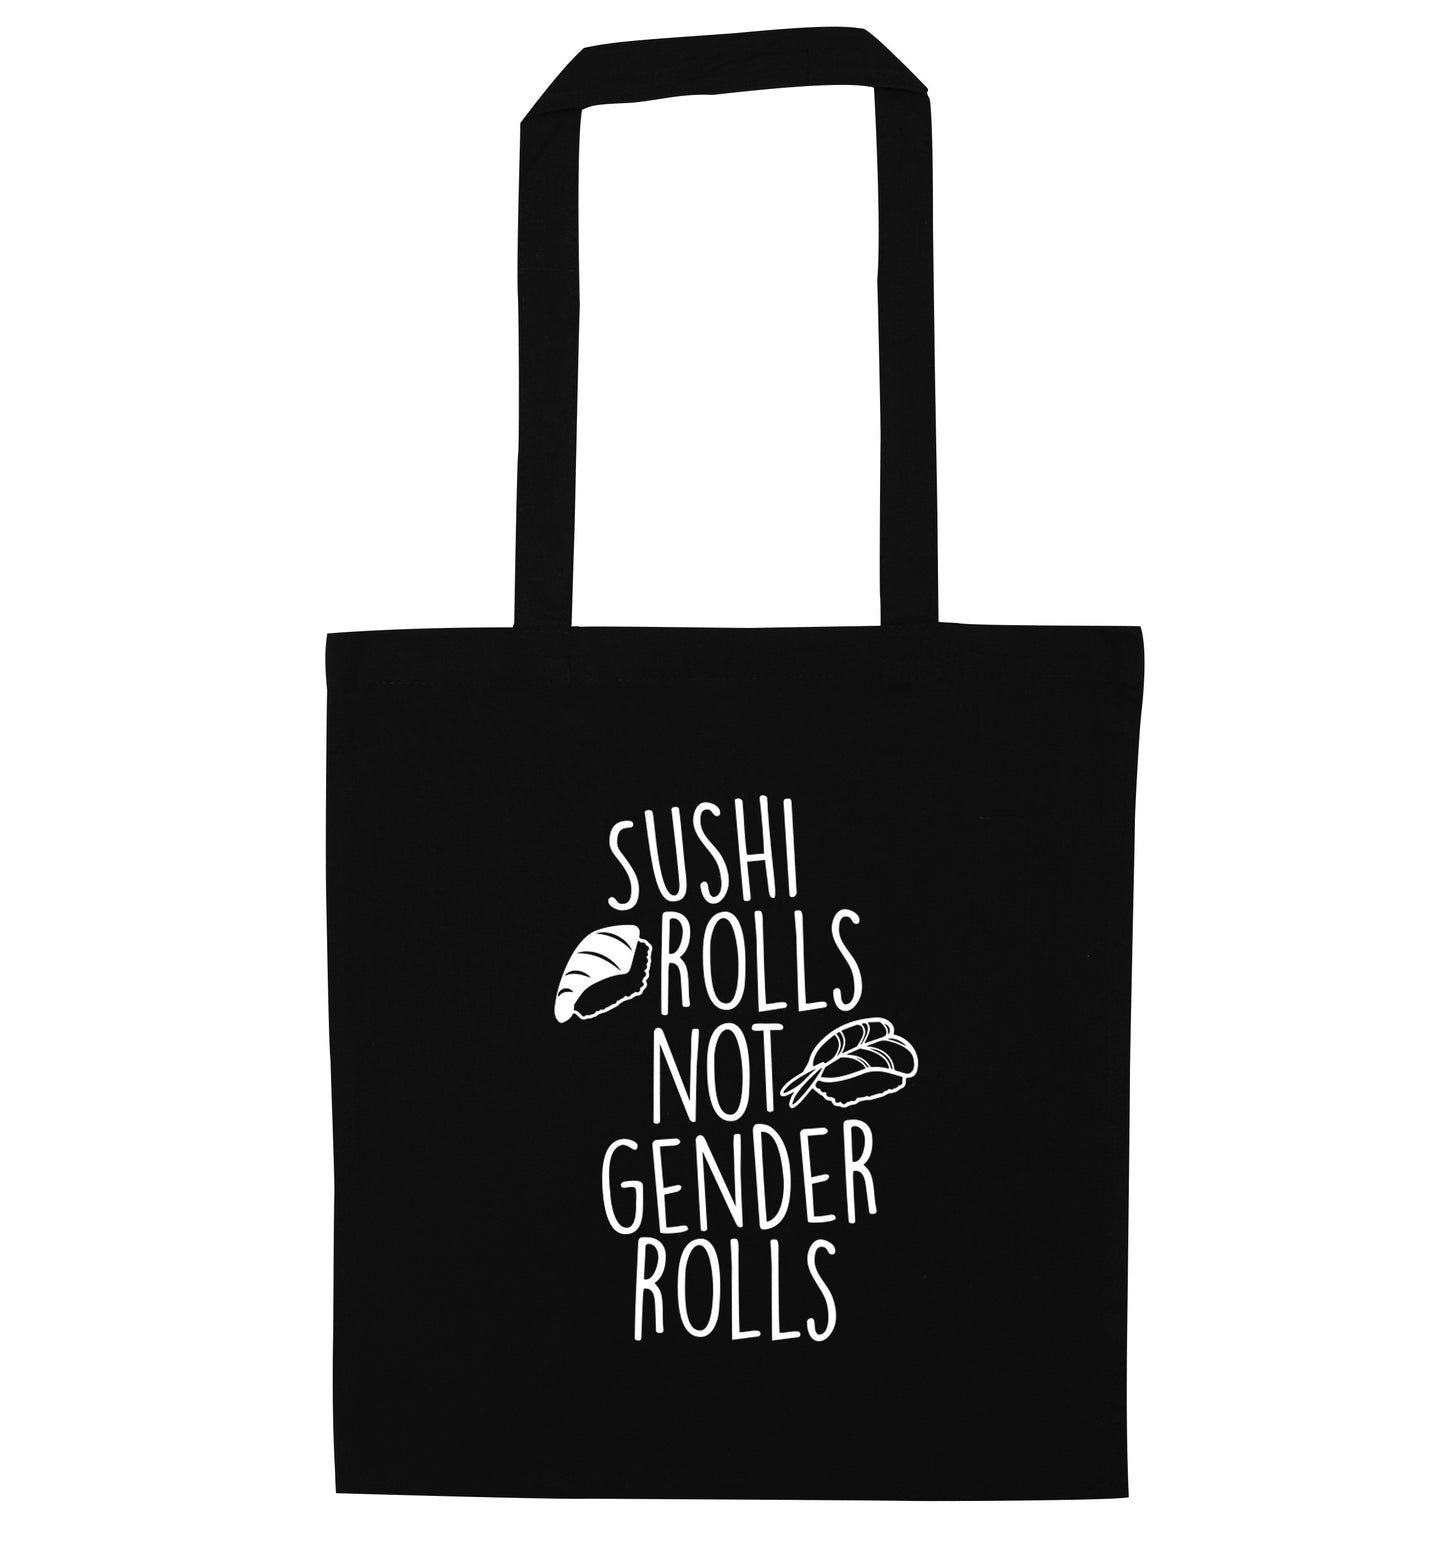 Sushi rolls not gender rolls black tote bag